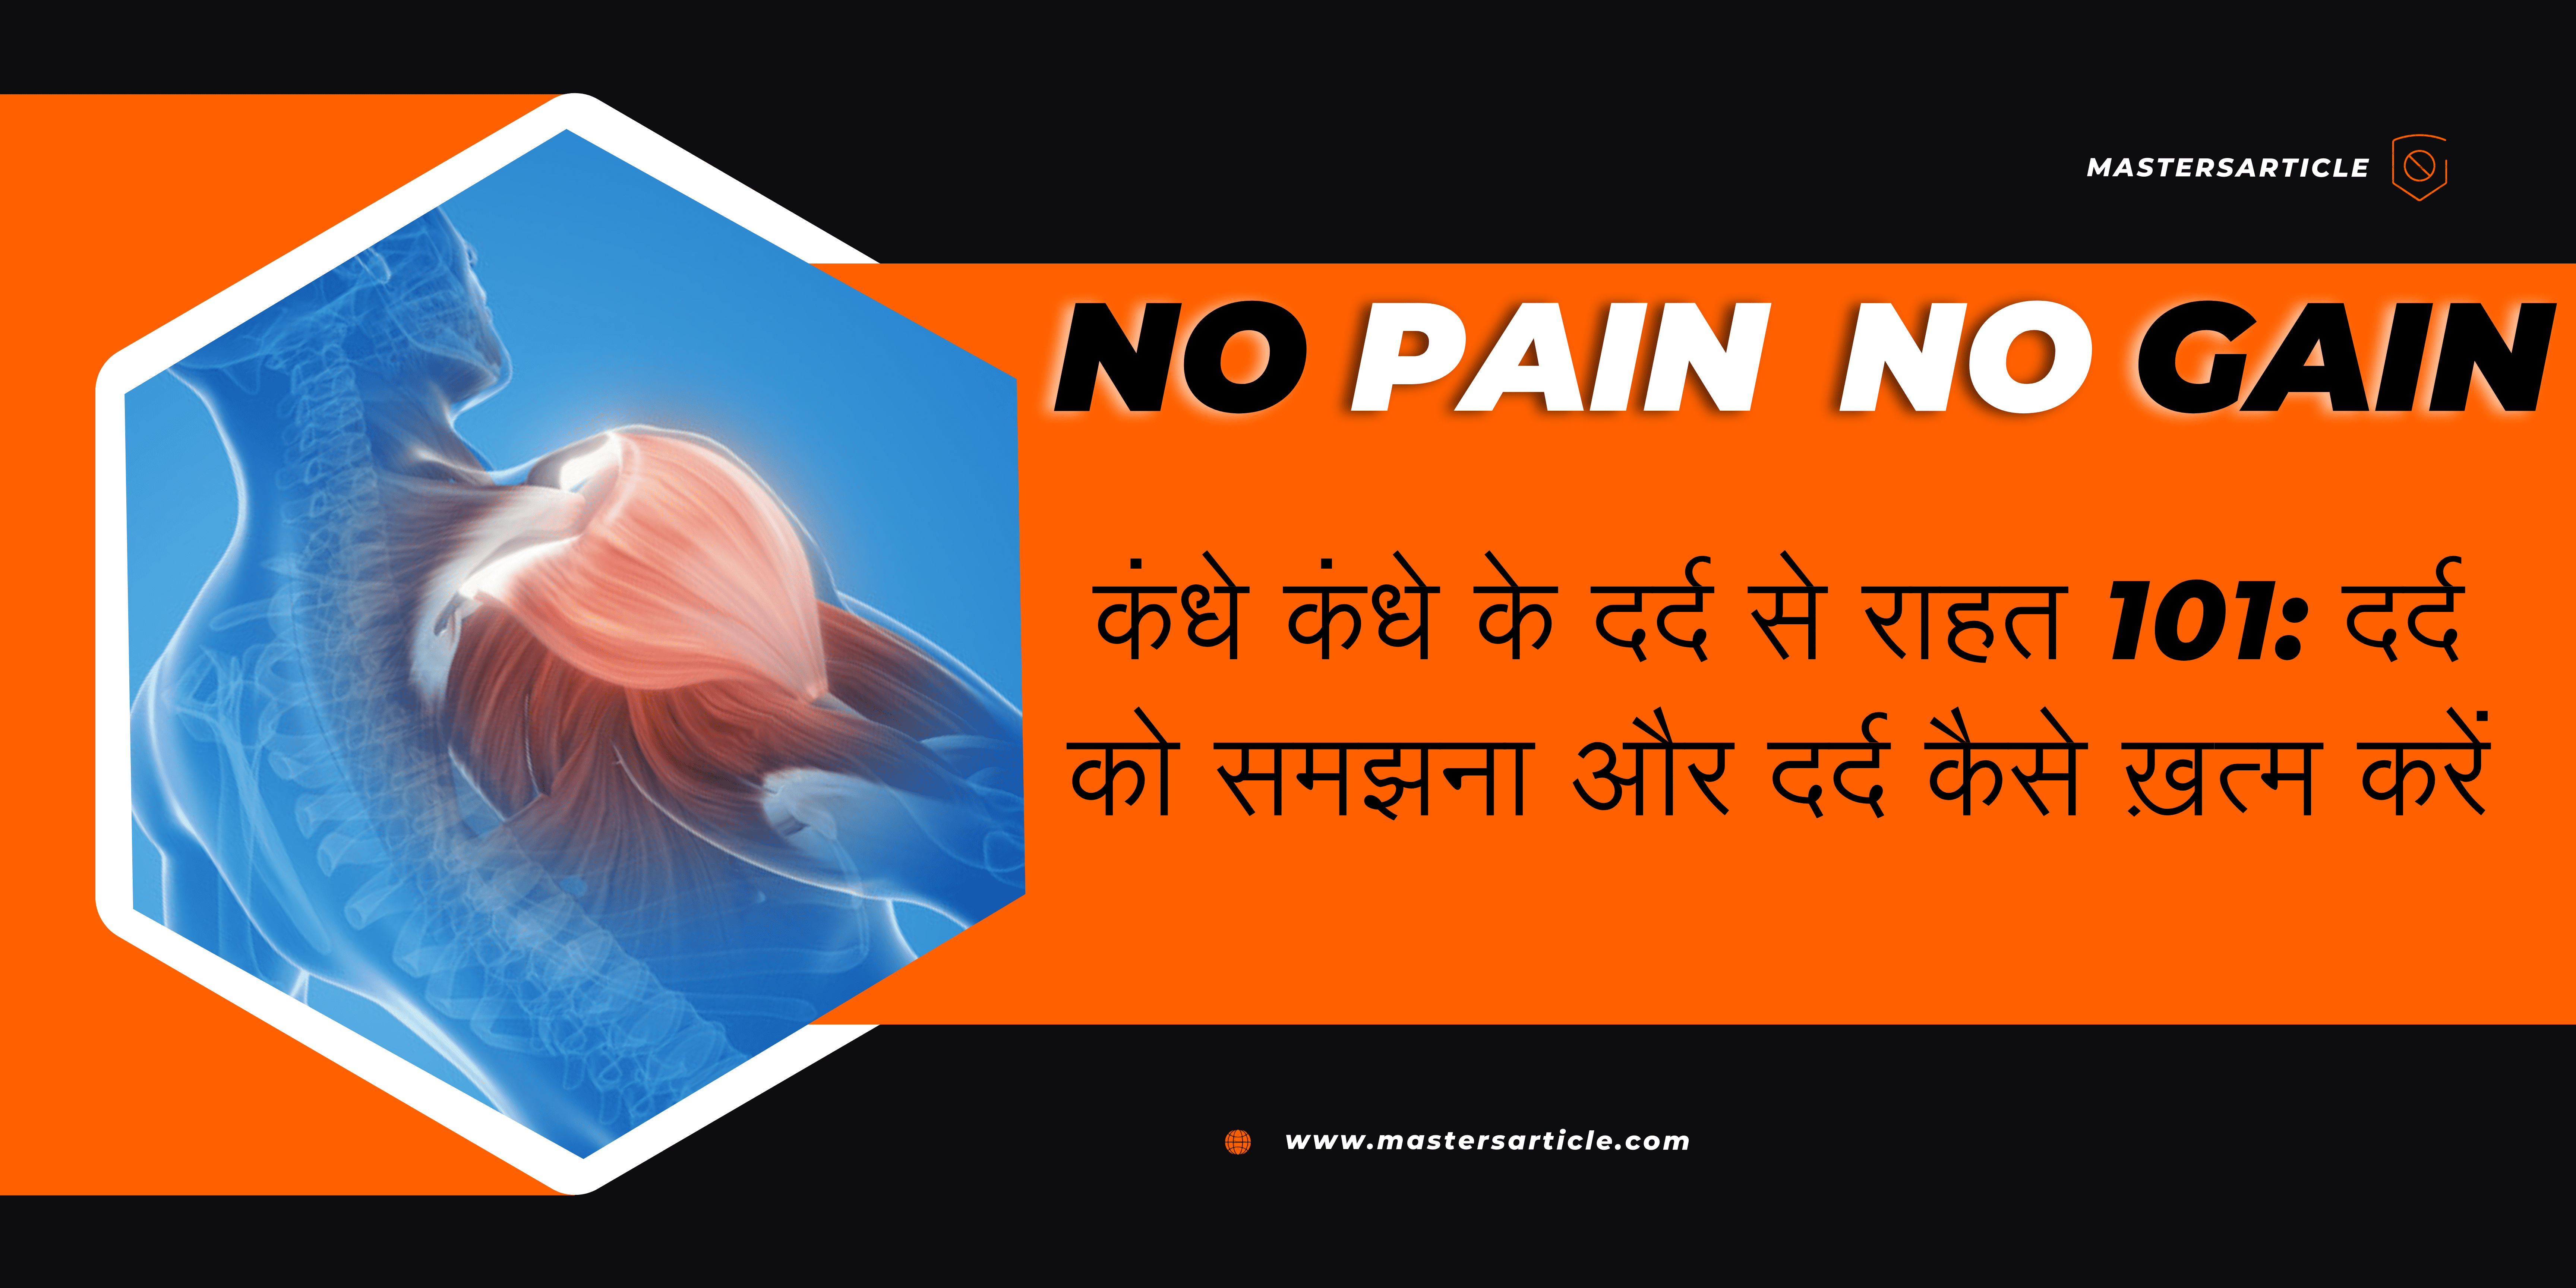 कंधे में दर्द से राहत 101: दर्द को समझना और दर्द कैसे ख़त्म करें | Useful Tips